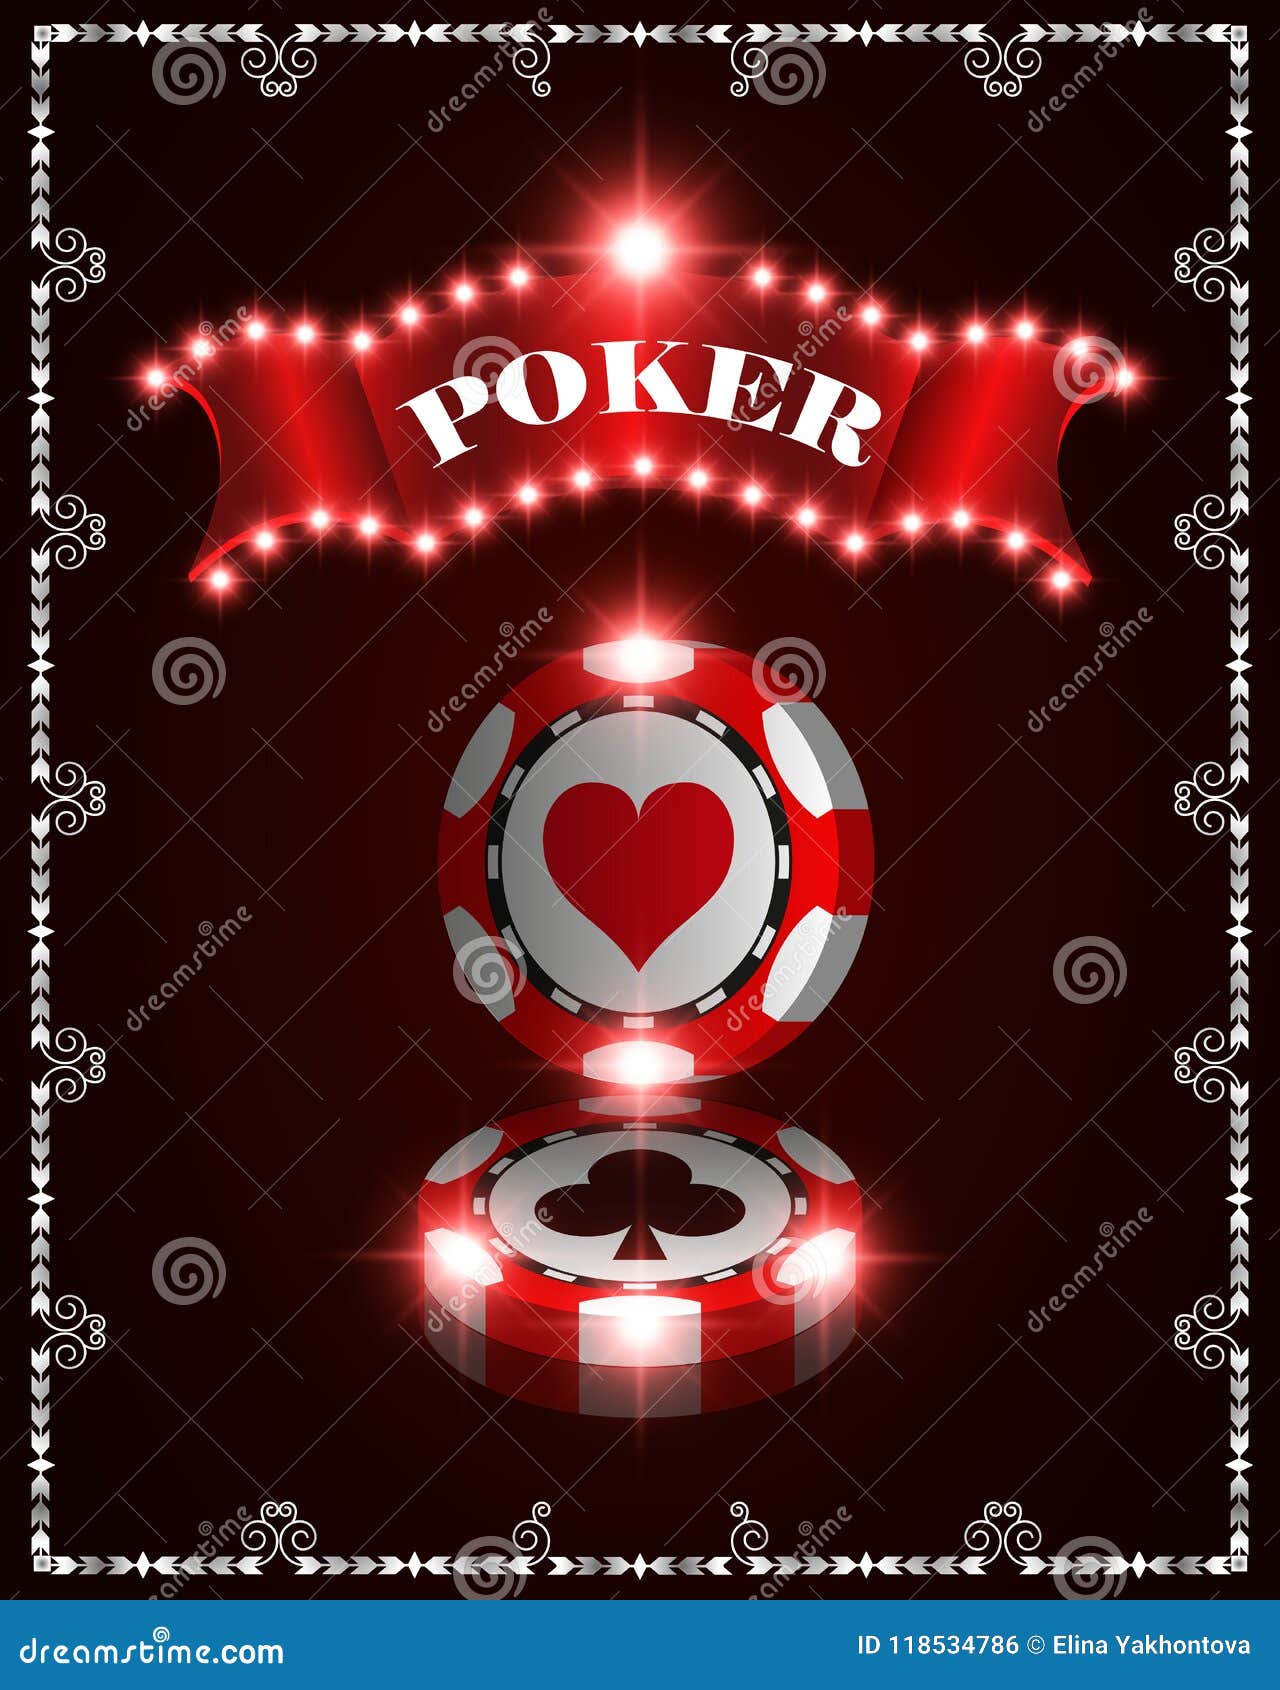 Download Vector Casino Poker Winner Chips, Template For Design ...